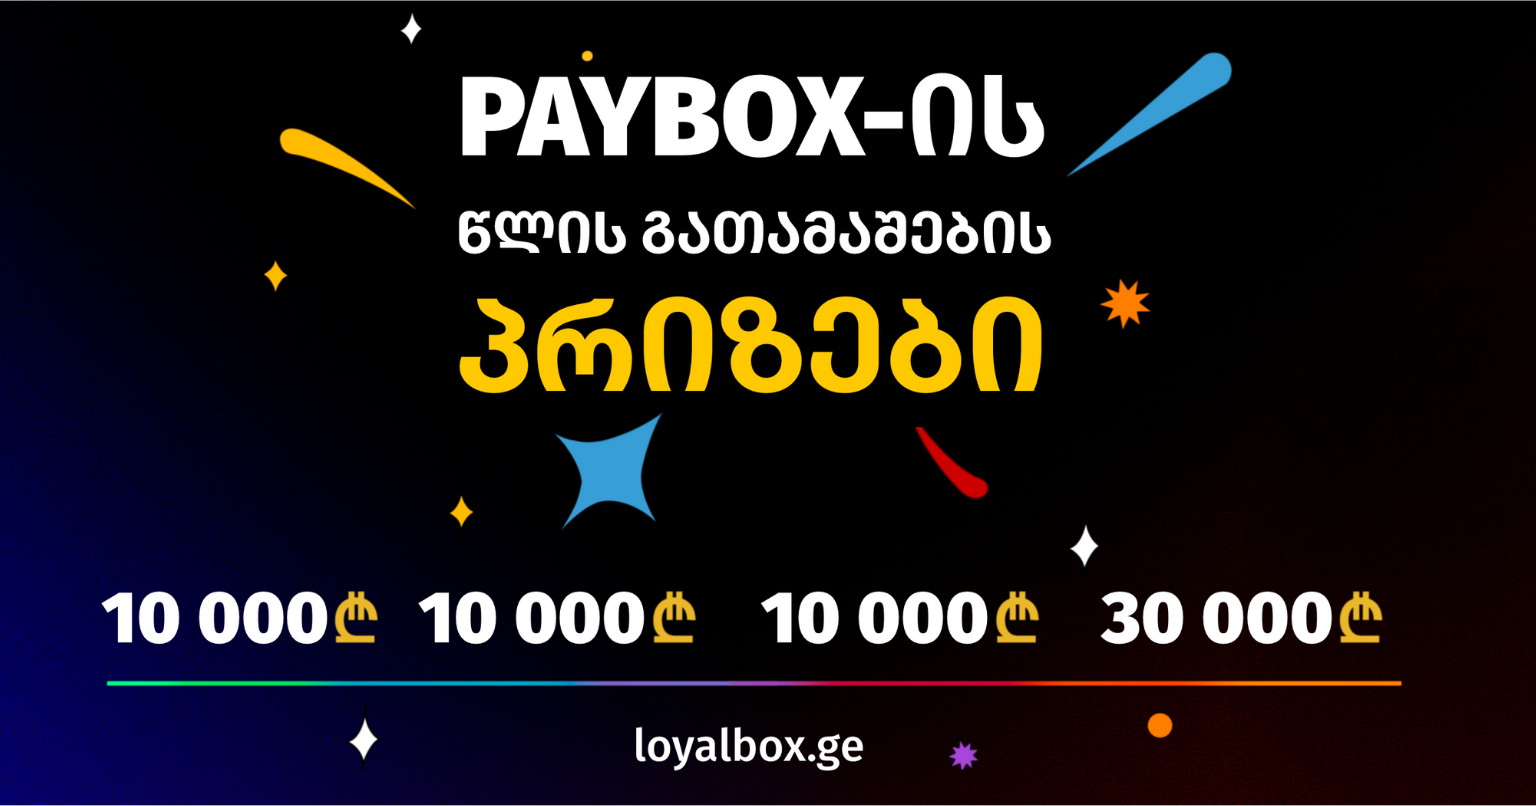 თუ ხშირად გაქვს შეხება ნაღდ ფულთან, PayBox-ის გათამაშების შესახებ უნდა იცოდე! - შანსი მოიგო 30000 ან 10000 ლარი